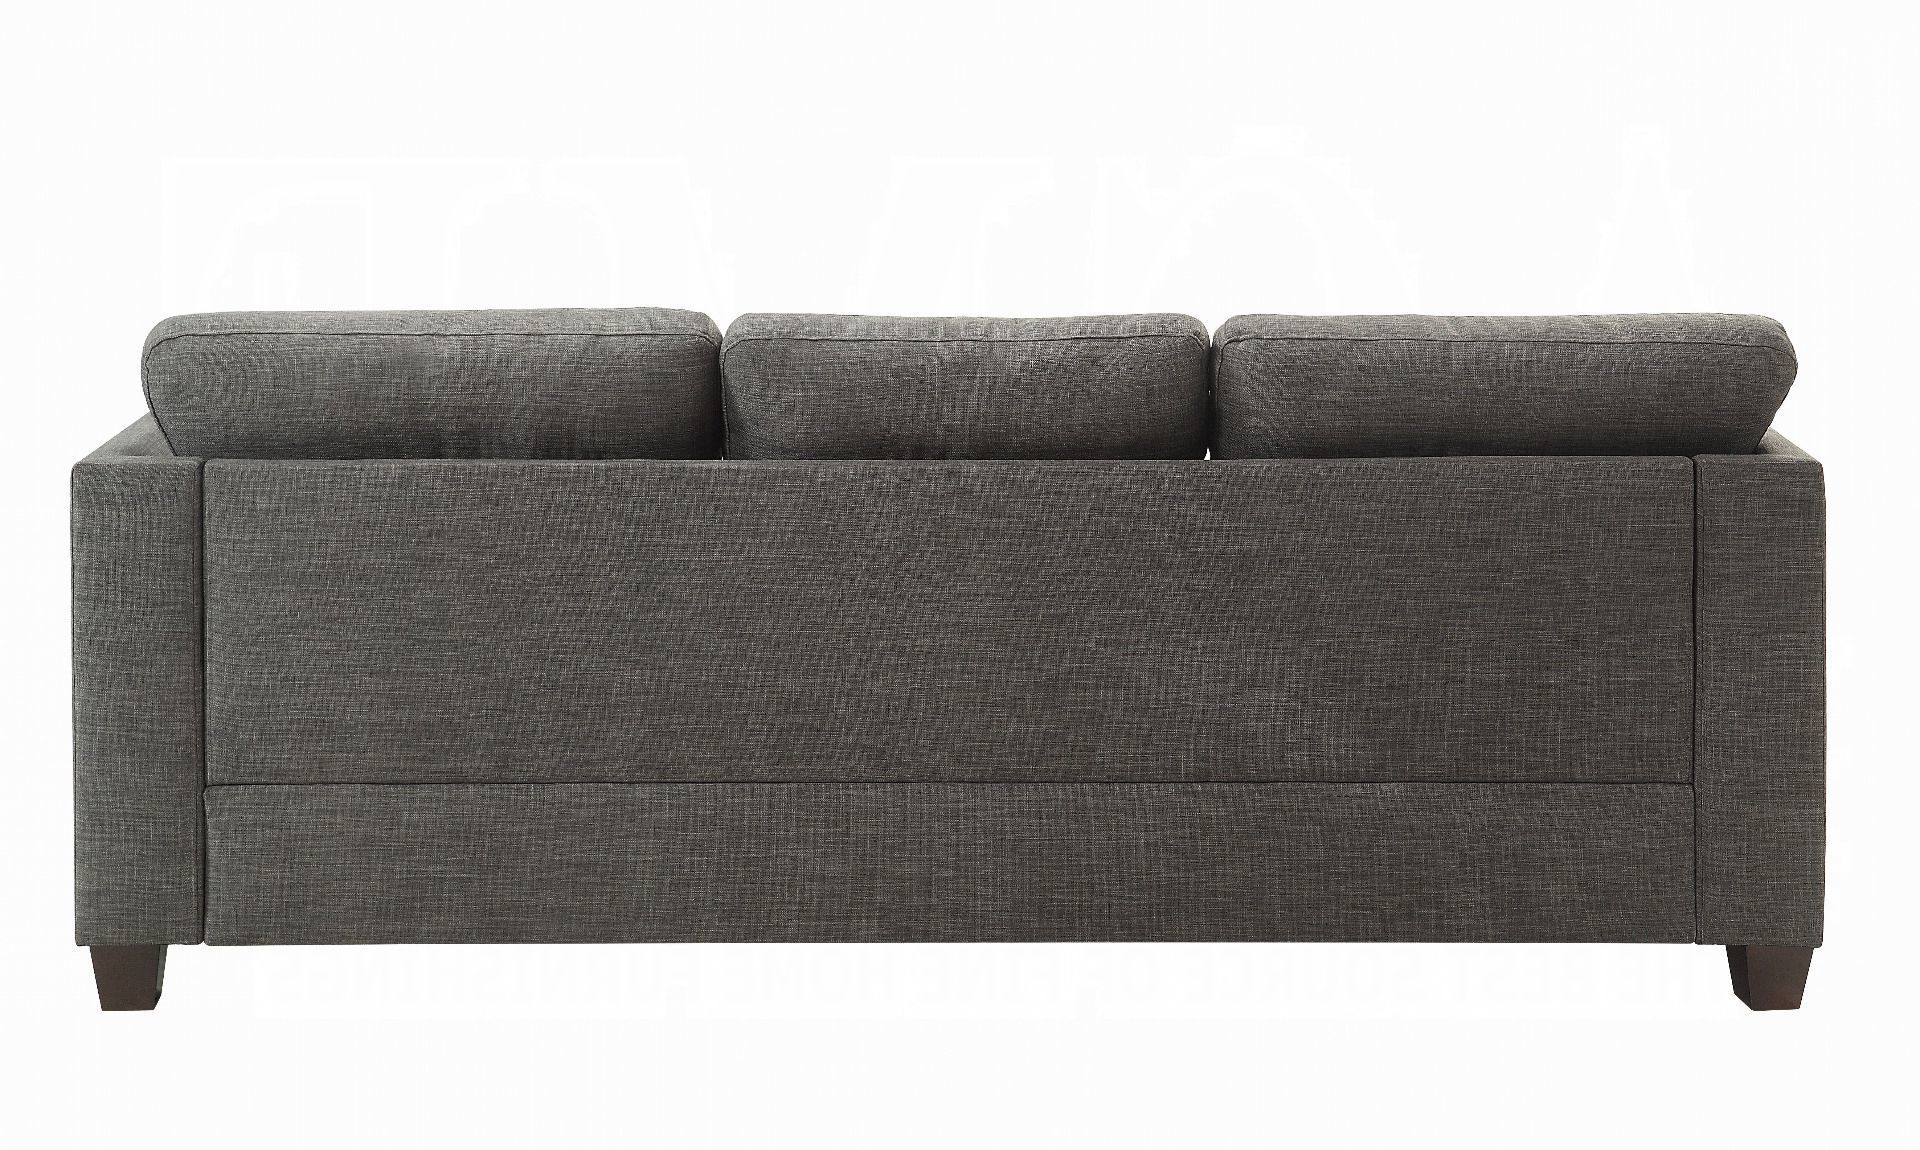 Laurissa Sofa W/4 Pillows – Light Charcoal Linen 52405acme Regarding Light Charcoal Linen Sofas (View 3 of 20)